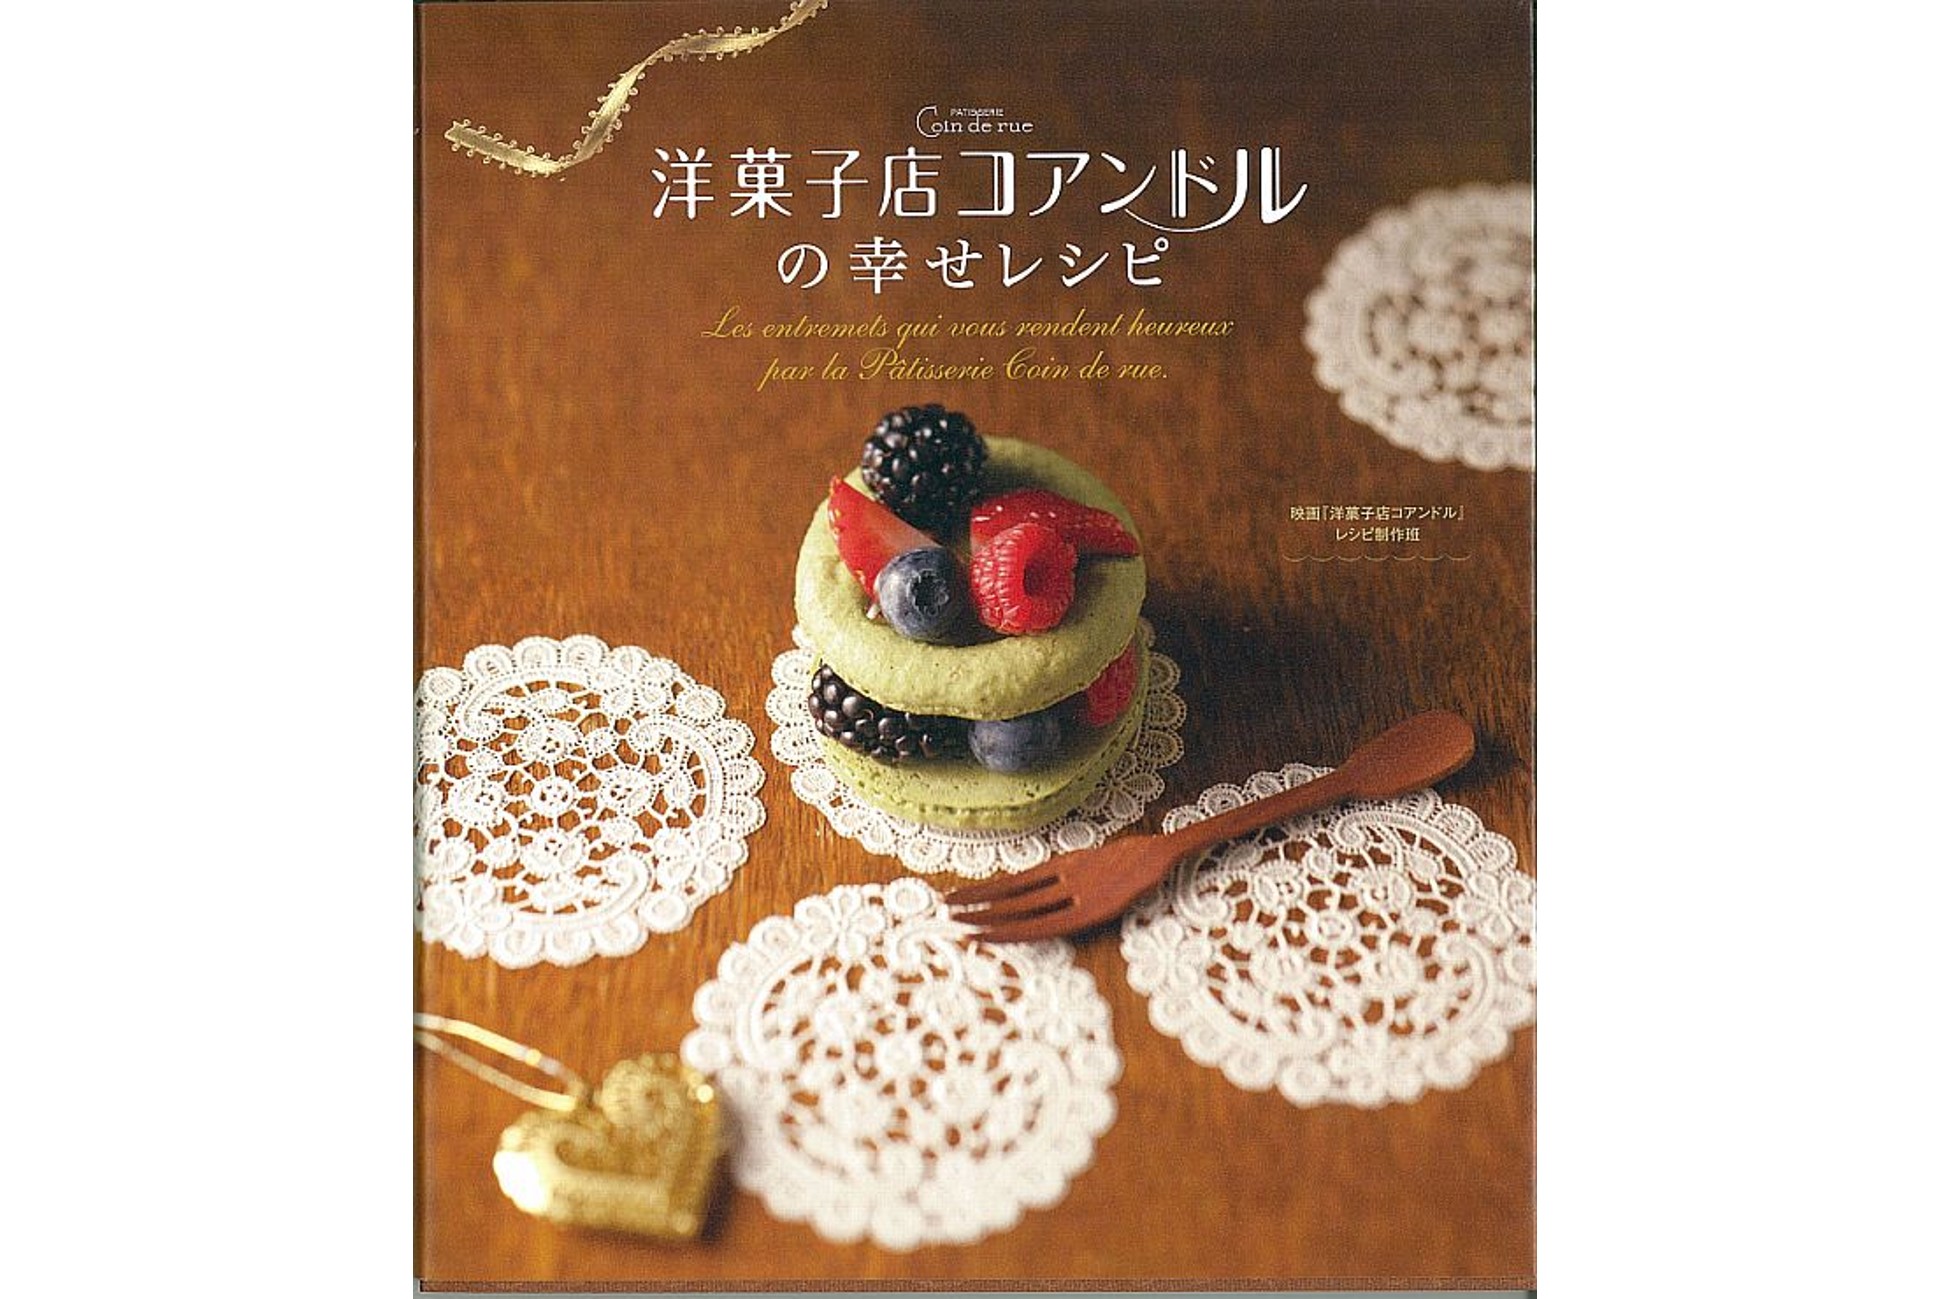 洋菓子店コアンドルの幸せレシピ